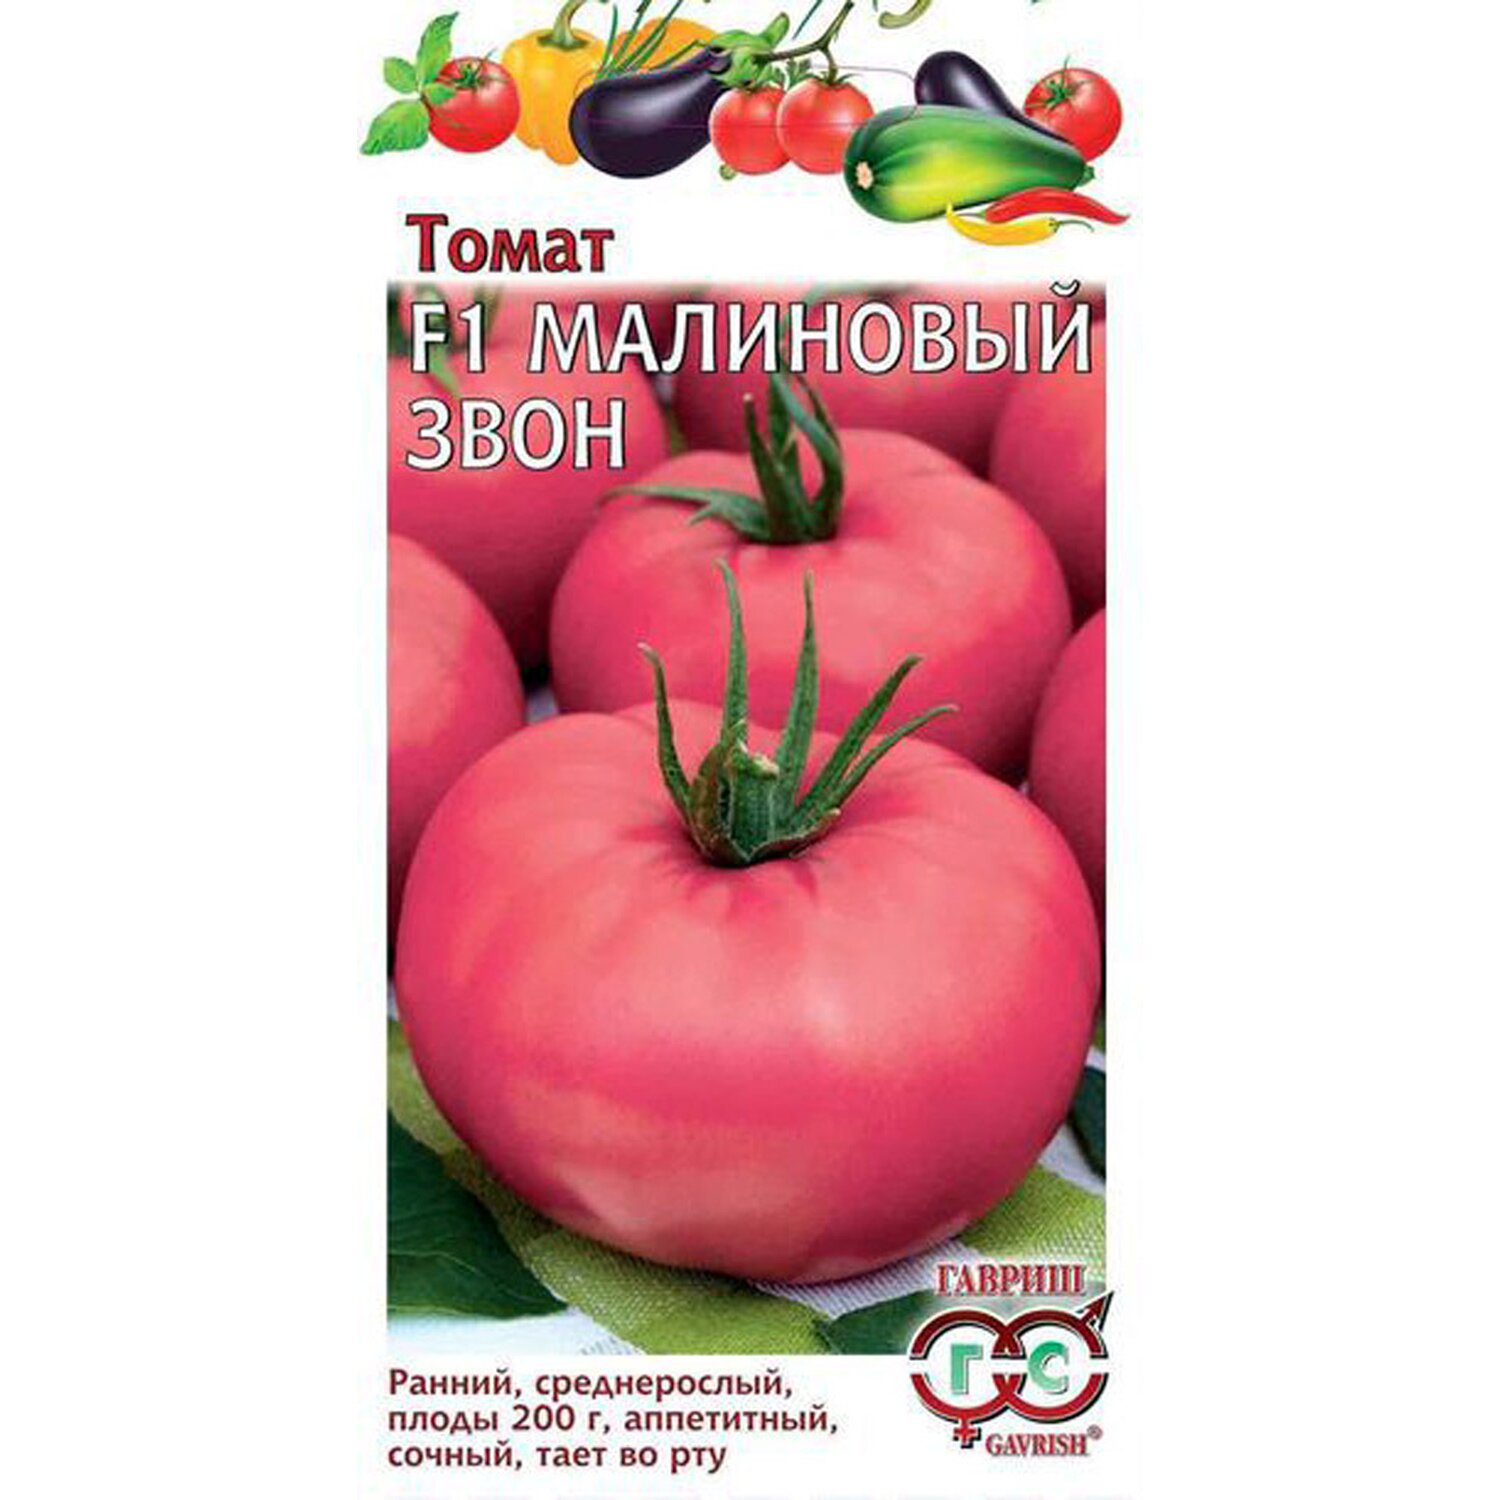 Томат малиновый рай описание сорта - агро журнал pole39.ru